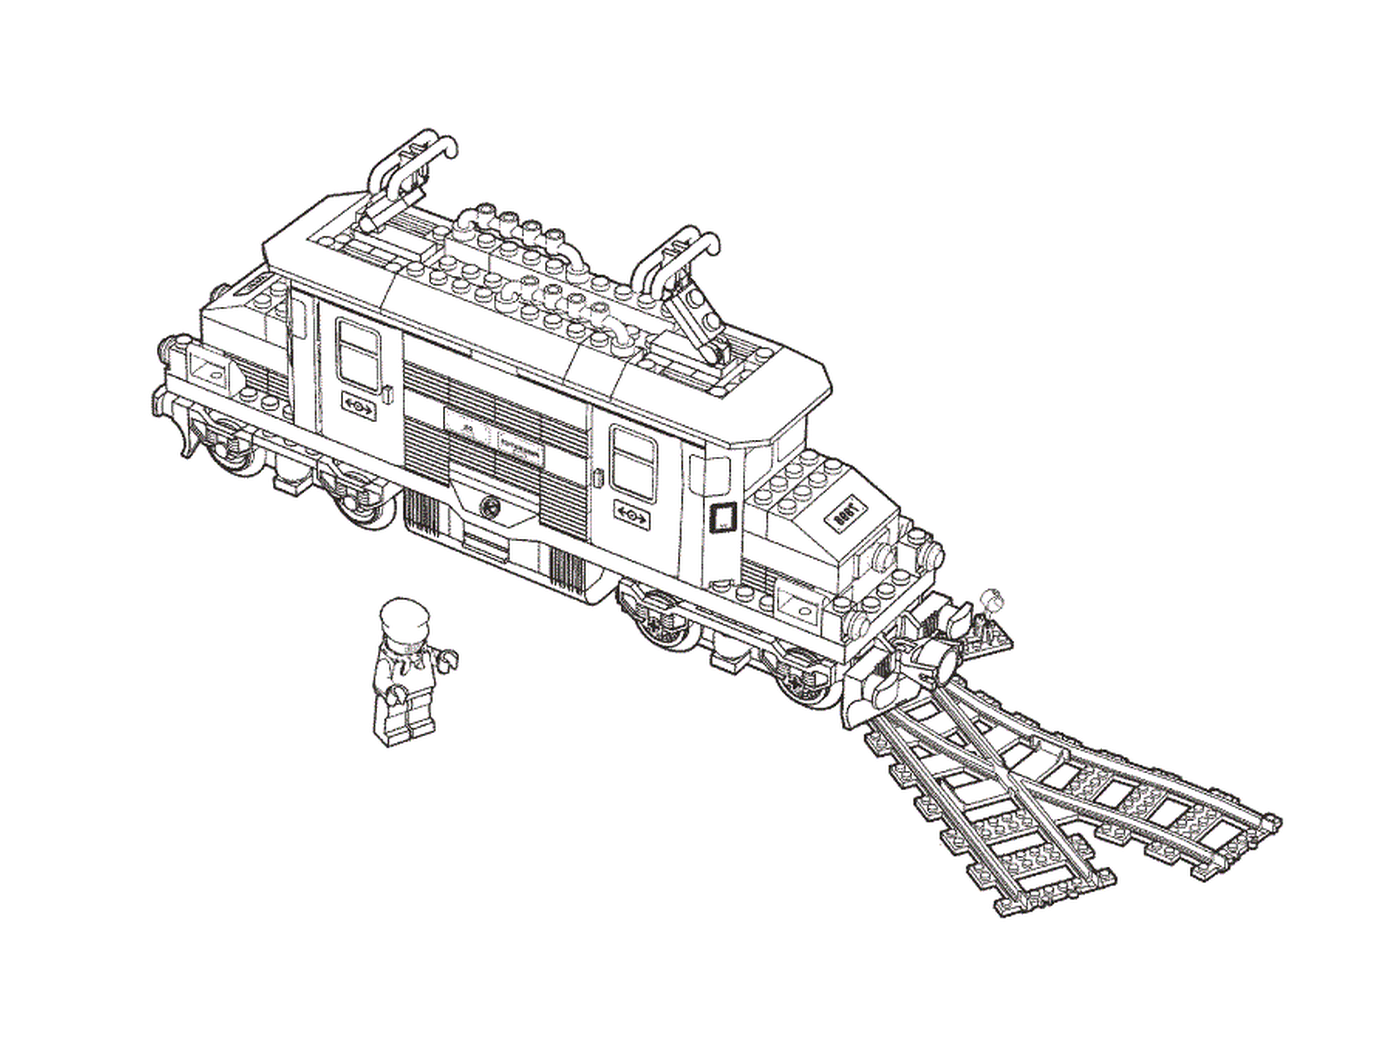  Disegno di un treno giocattolo Lego 